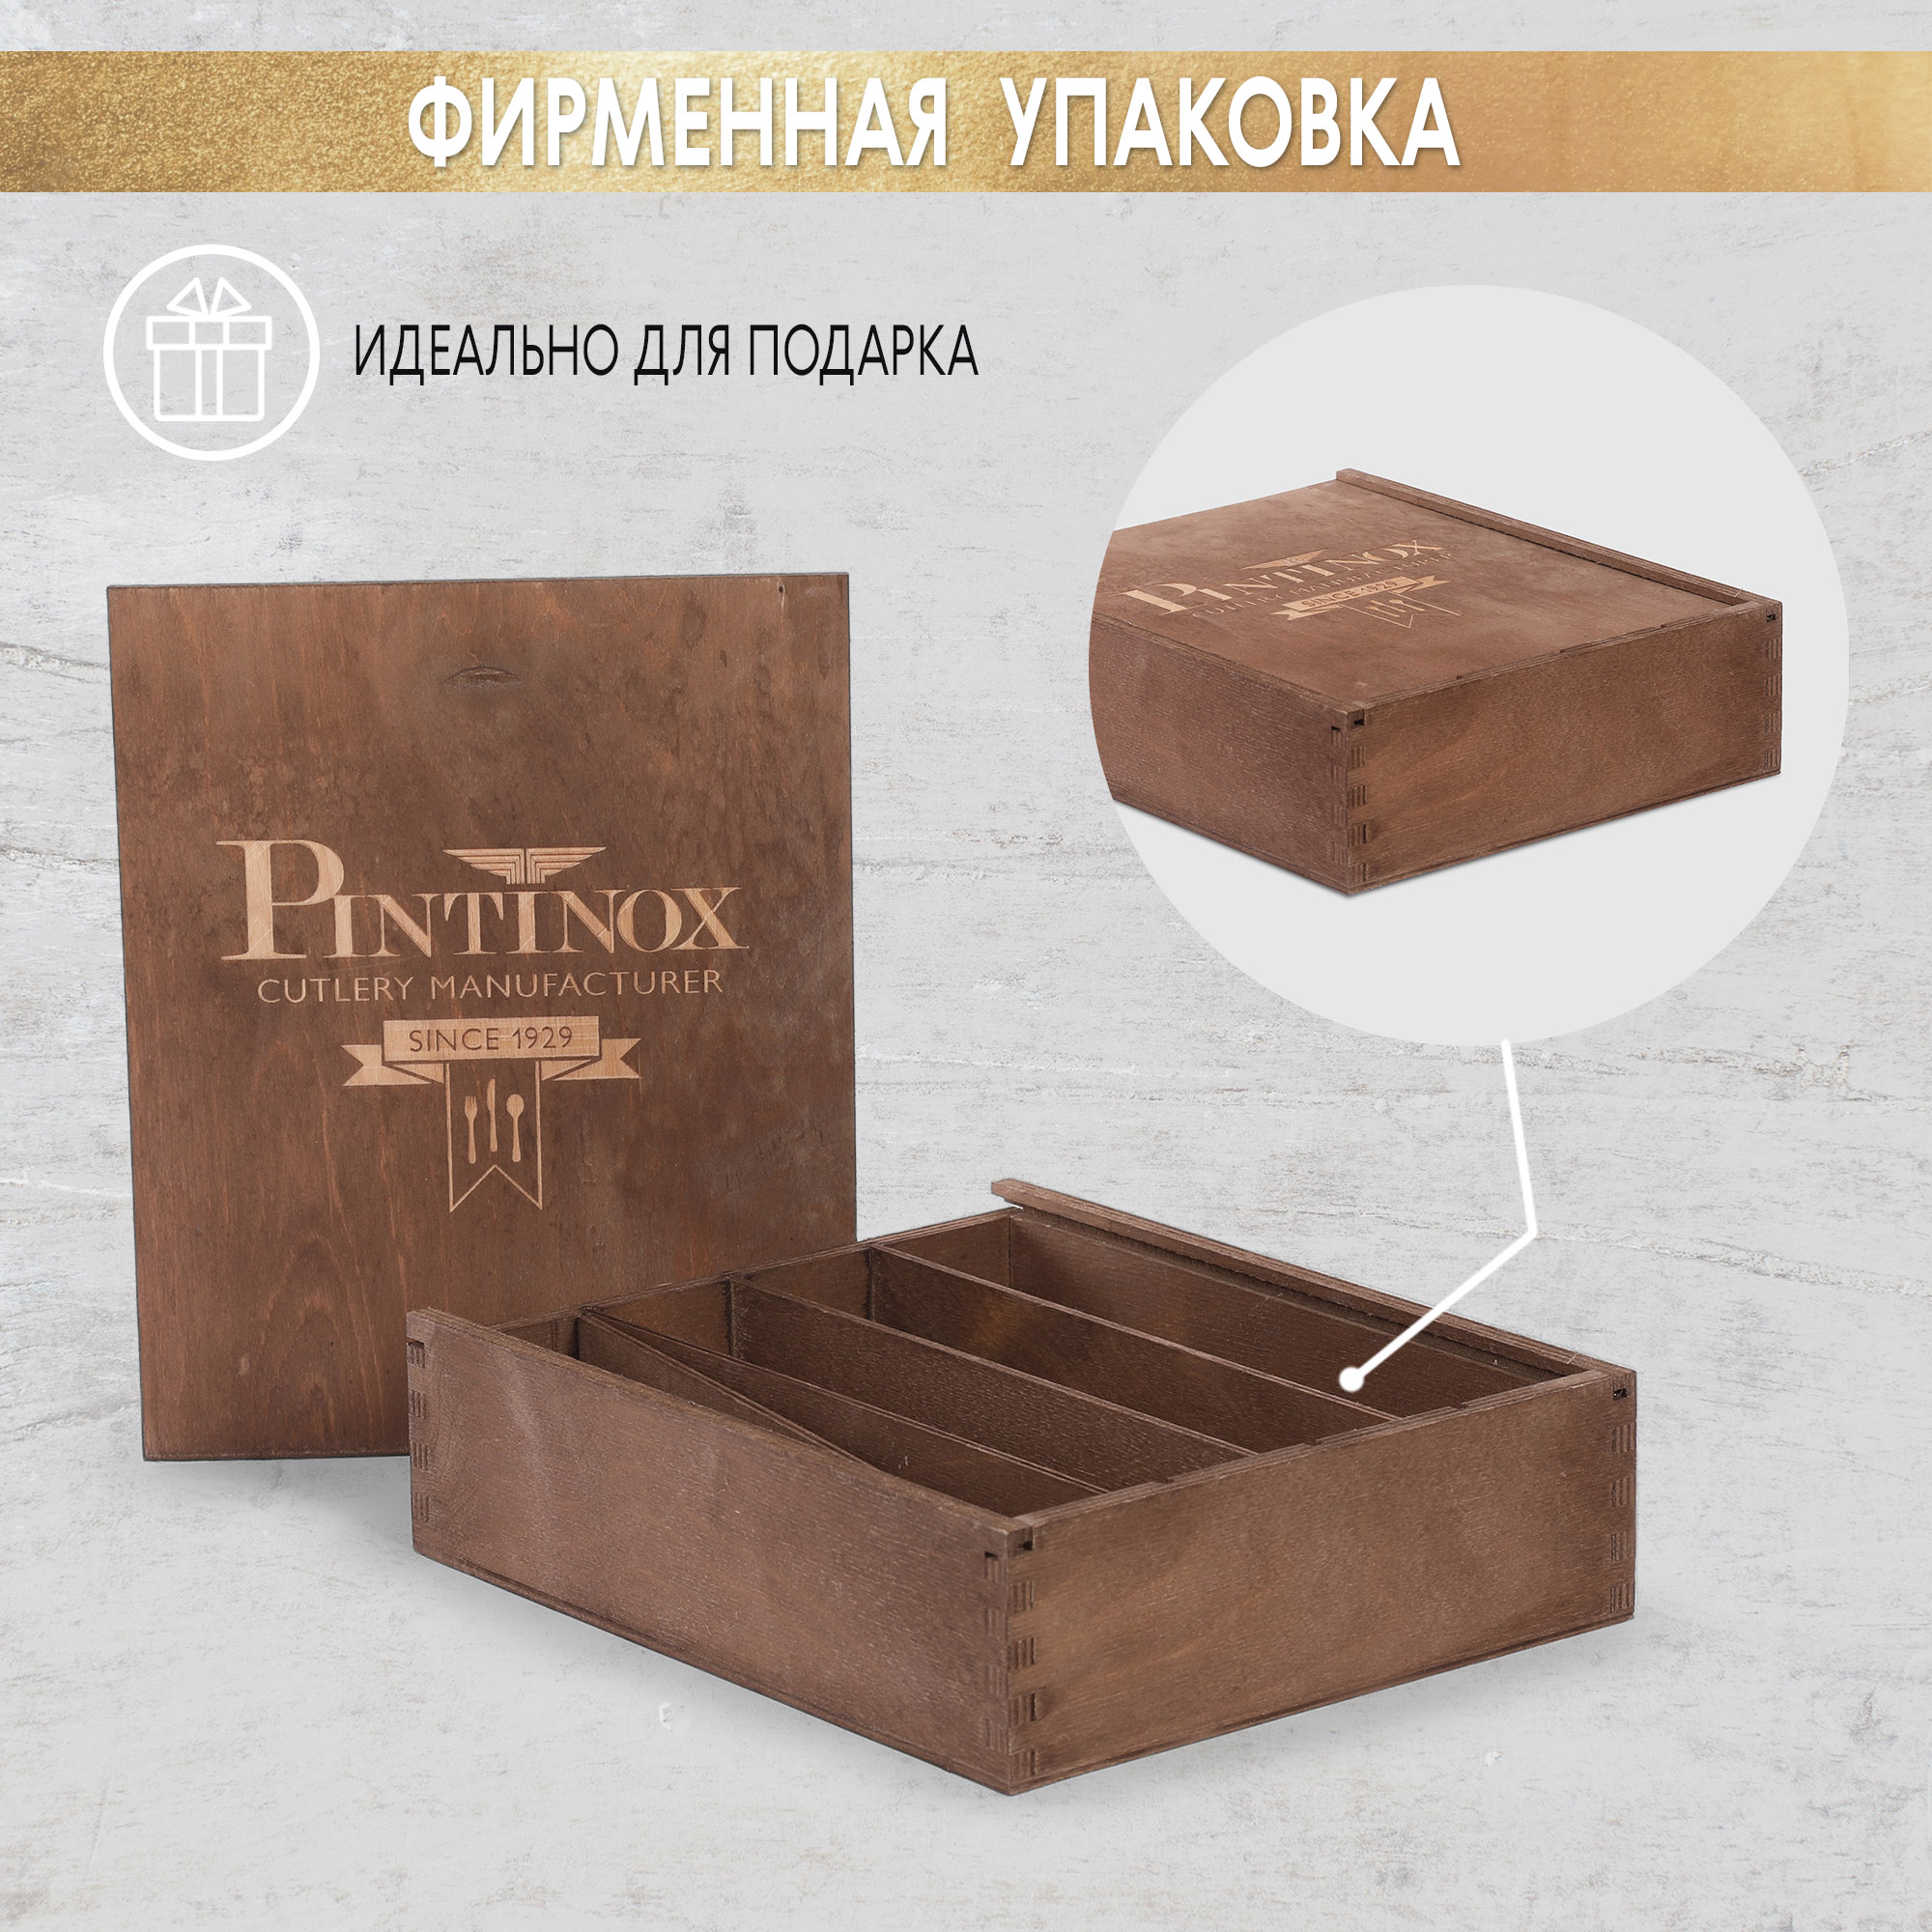 Набор столовых приборов Pintinox Satin cop 24 предмета 6 персон, цвет бронзовый - фото 8